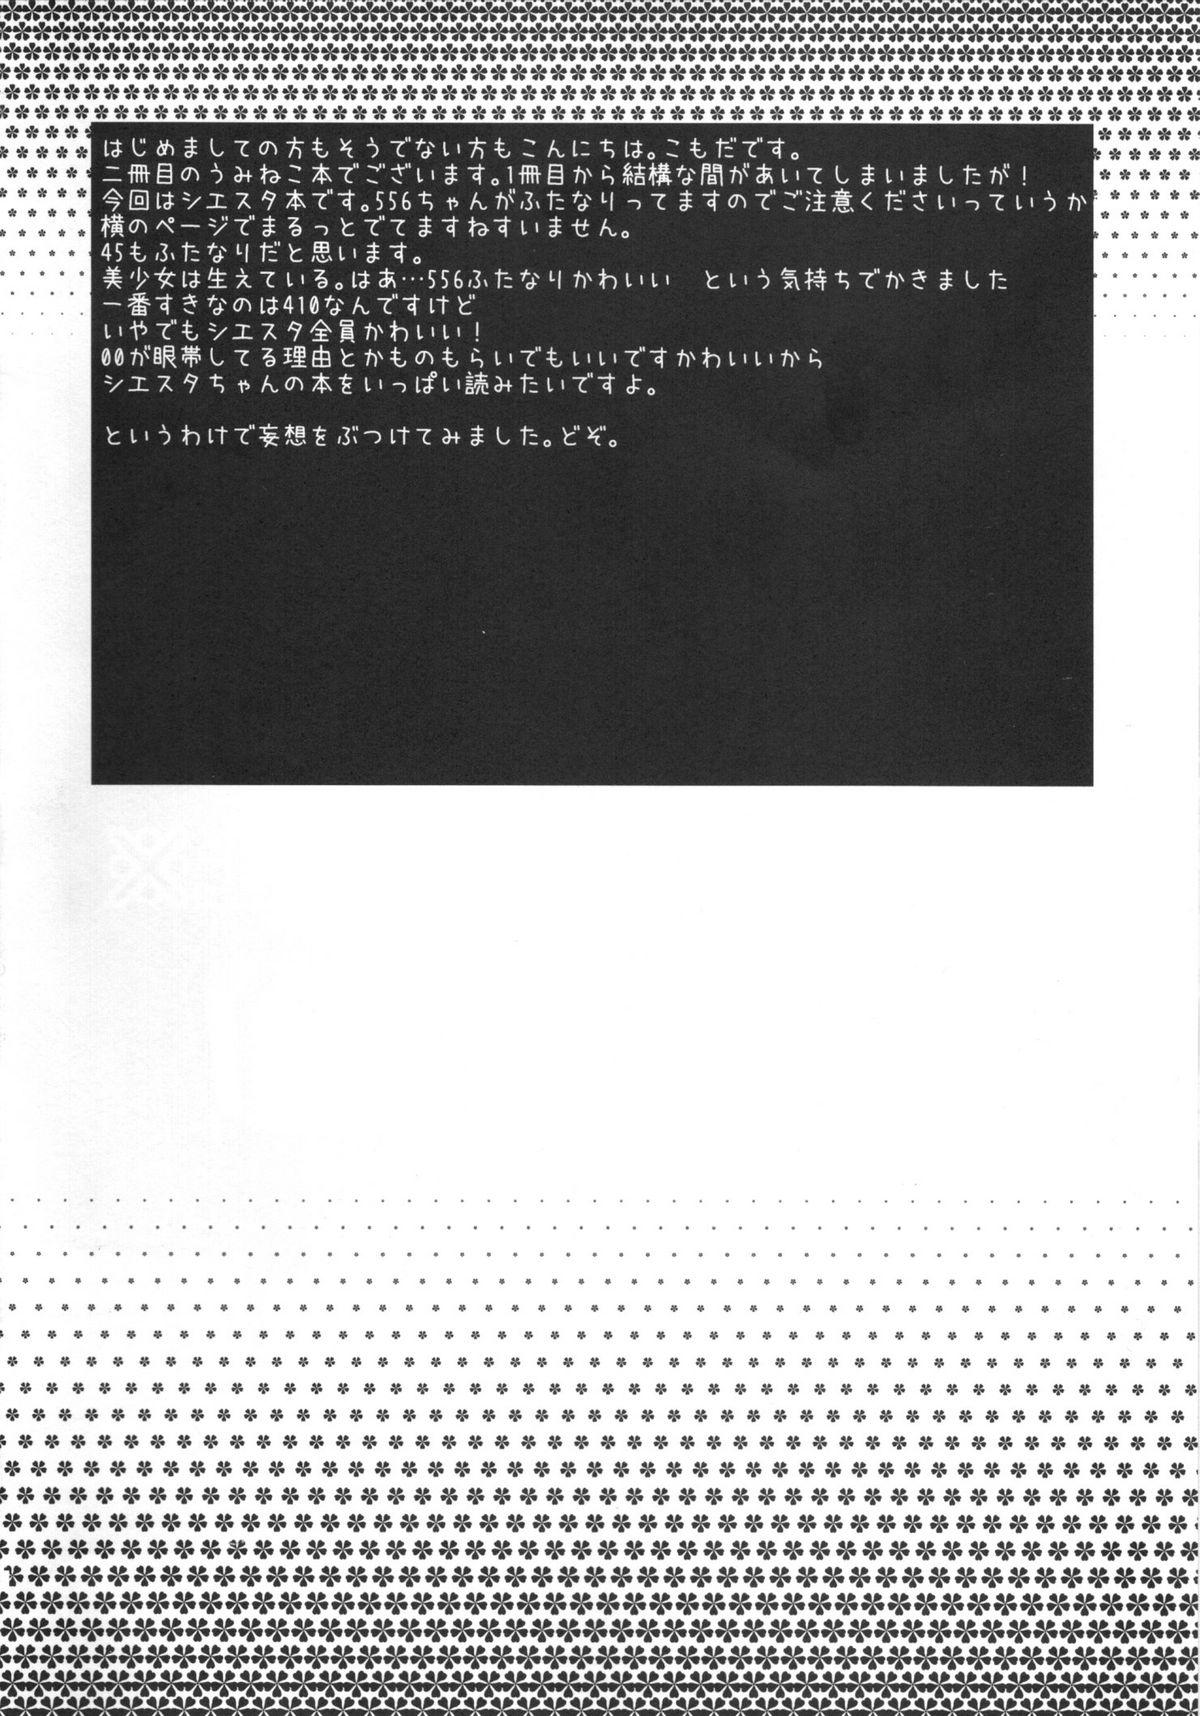 Toilet RabiRabi - Umineko no naku koro ni Coroa - Page 3